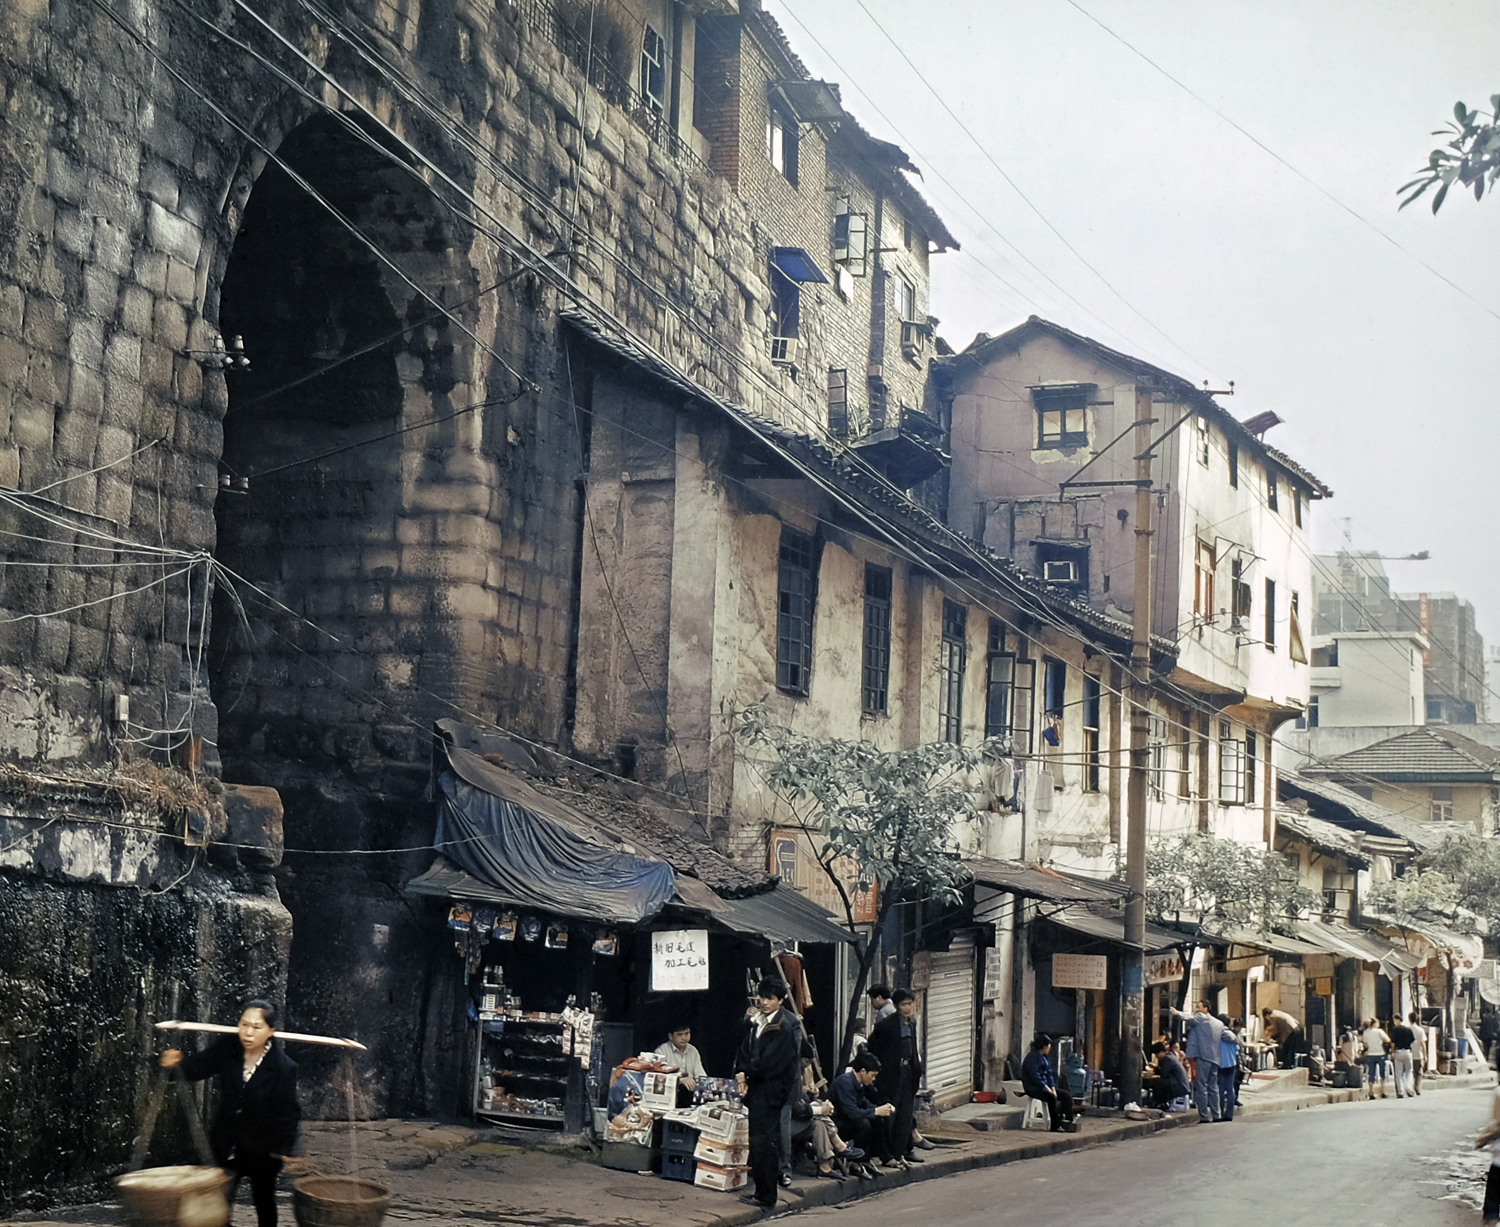 老照片的故事:重庆城原来的模样,在这条小巷里